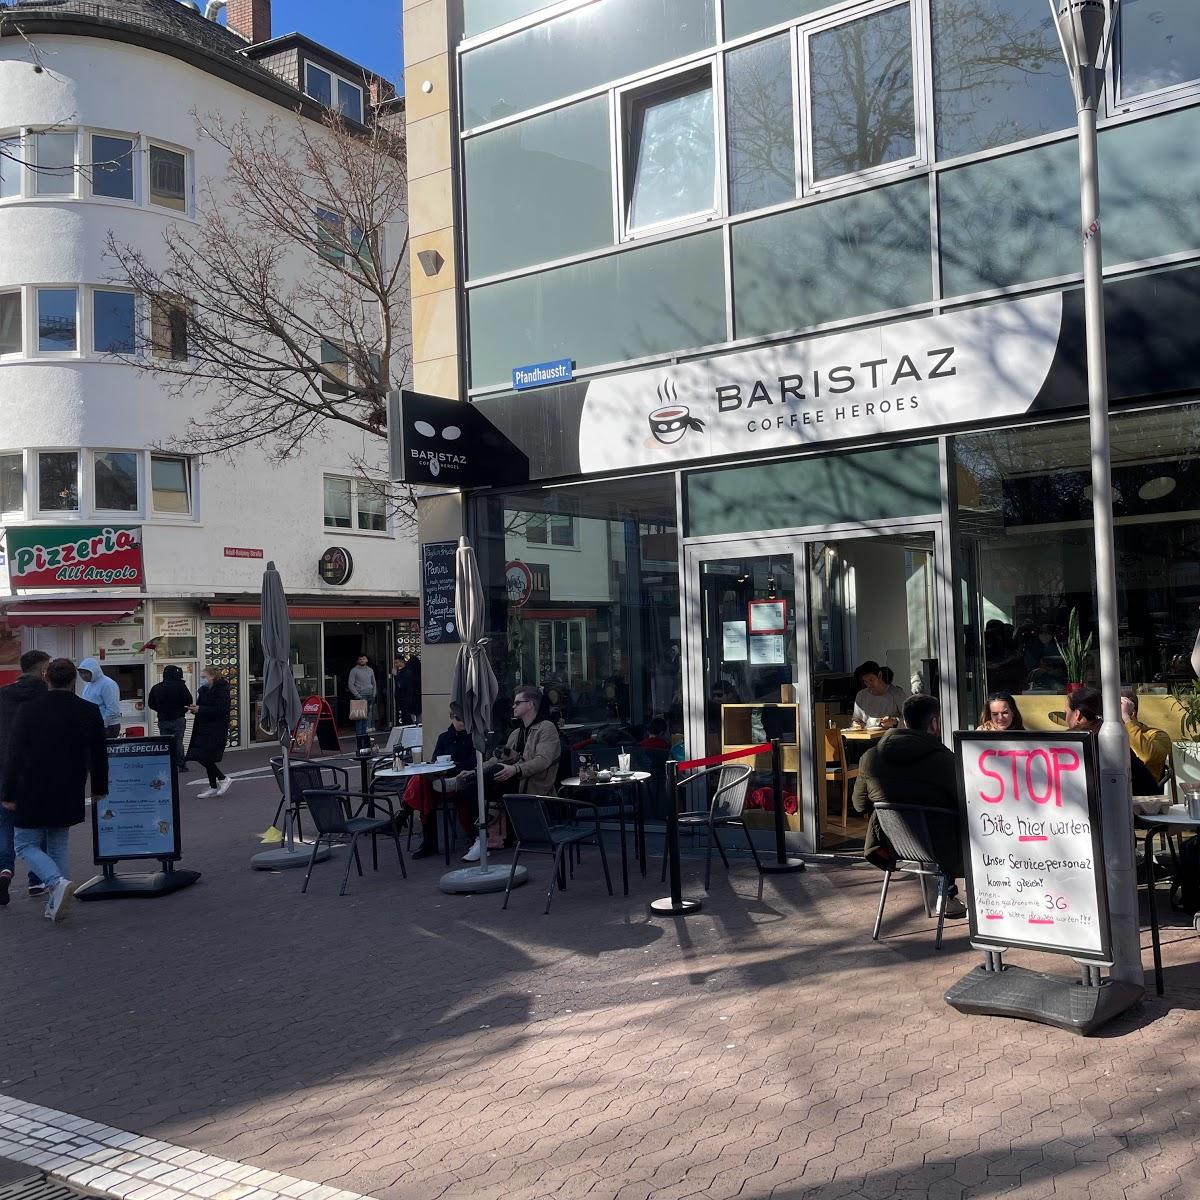 Restaurant "Baristaz Coffee Heroes" in Mainz